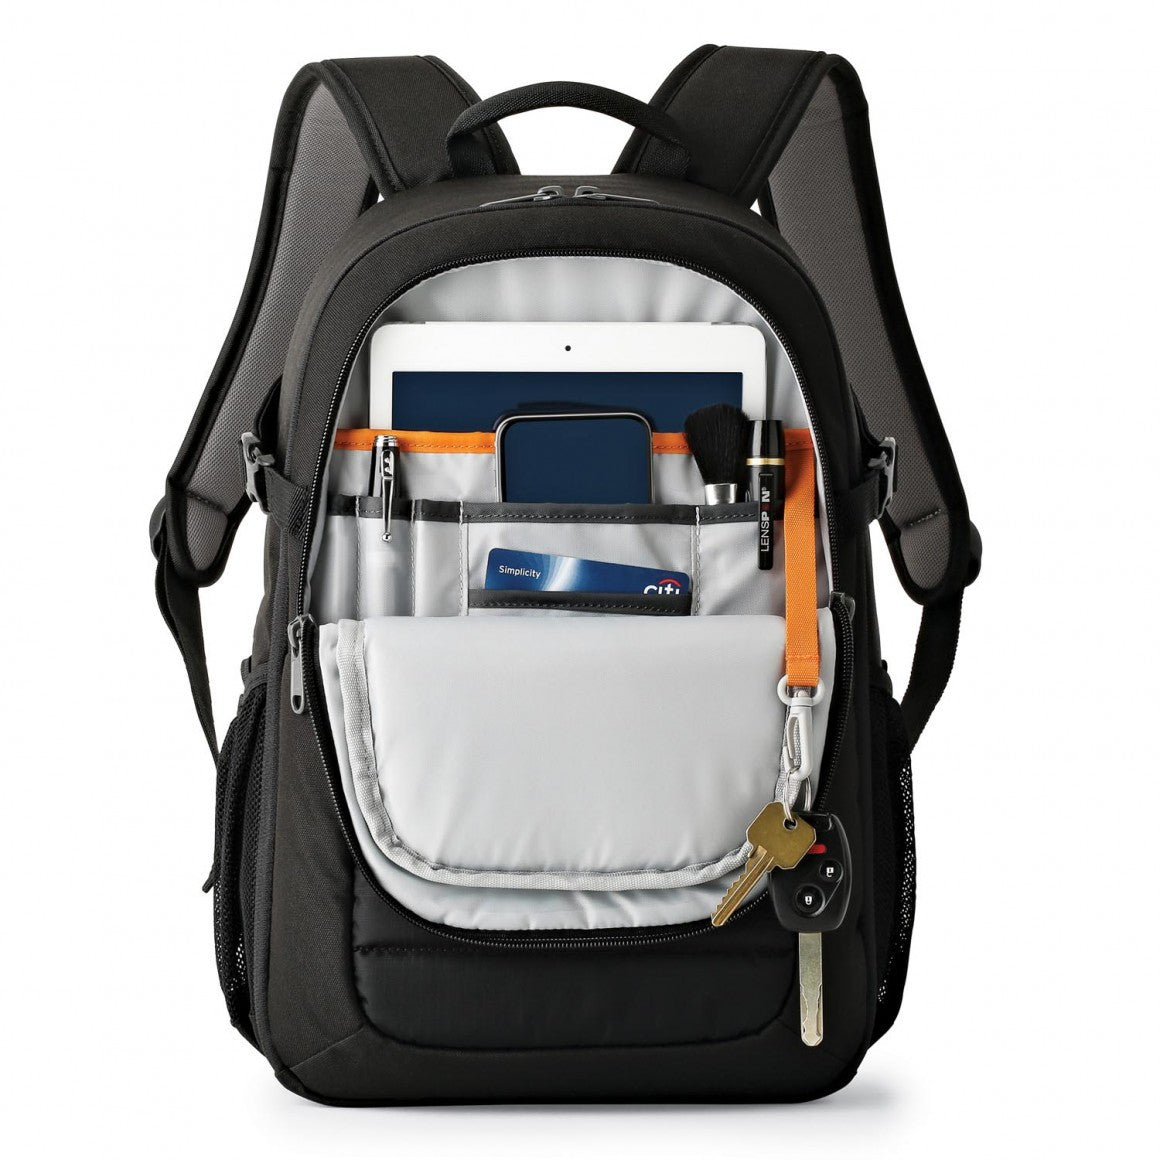 Lowepro Tahoe BP150 Backpack (Black), bags backpacks, Lowepro - Pictureline  - 3